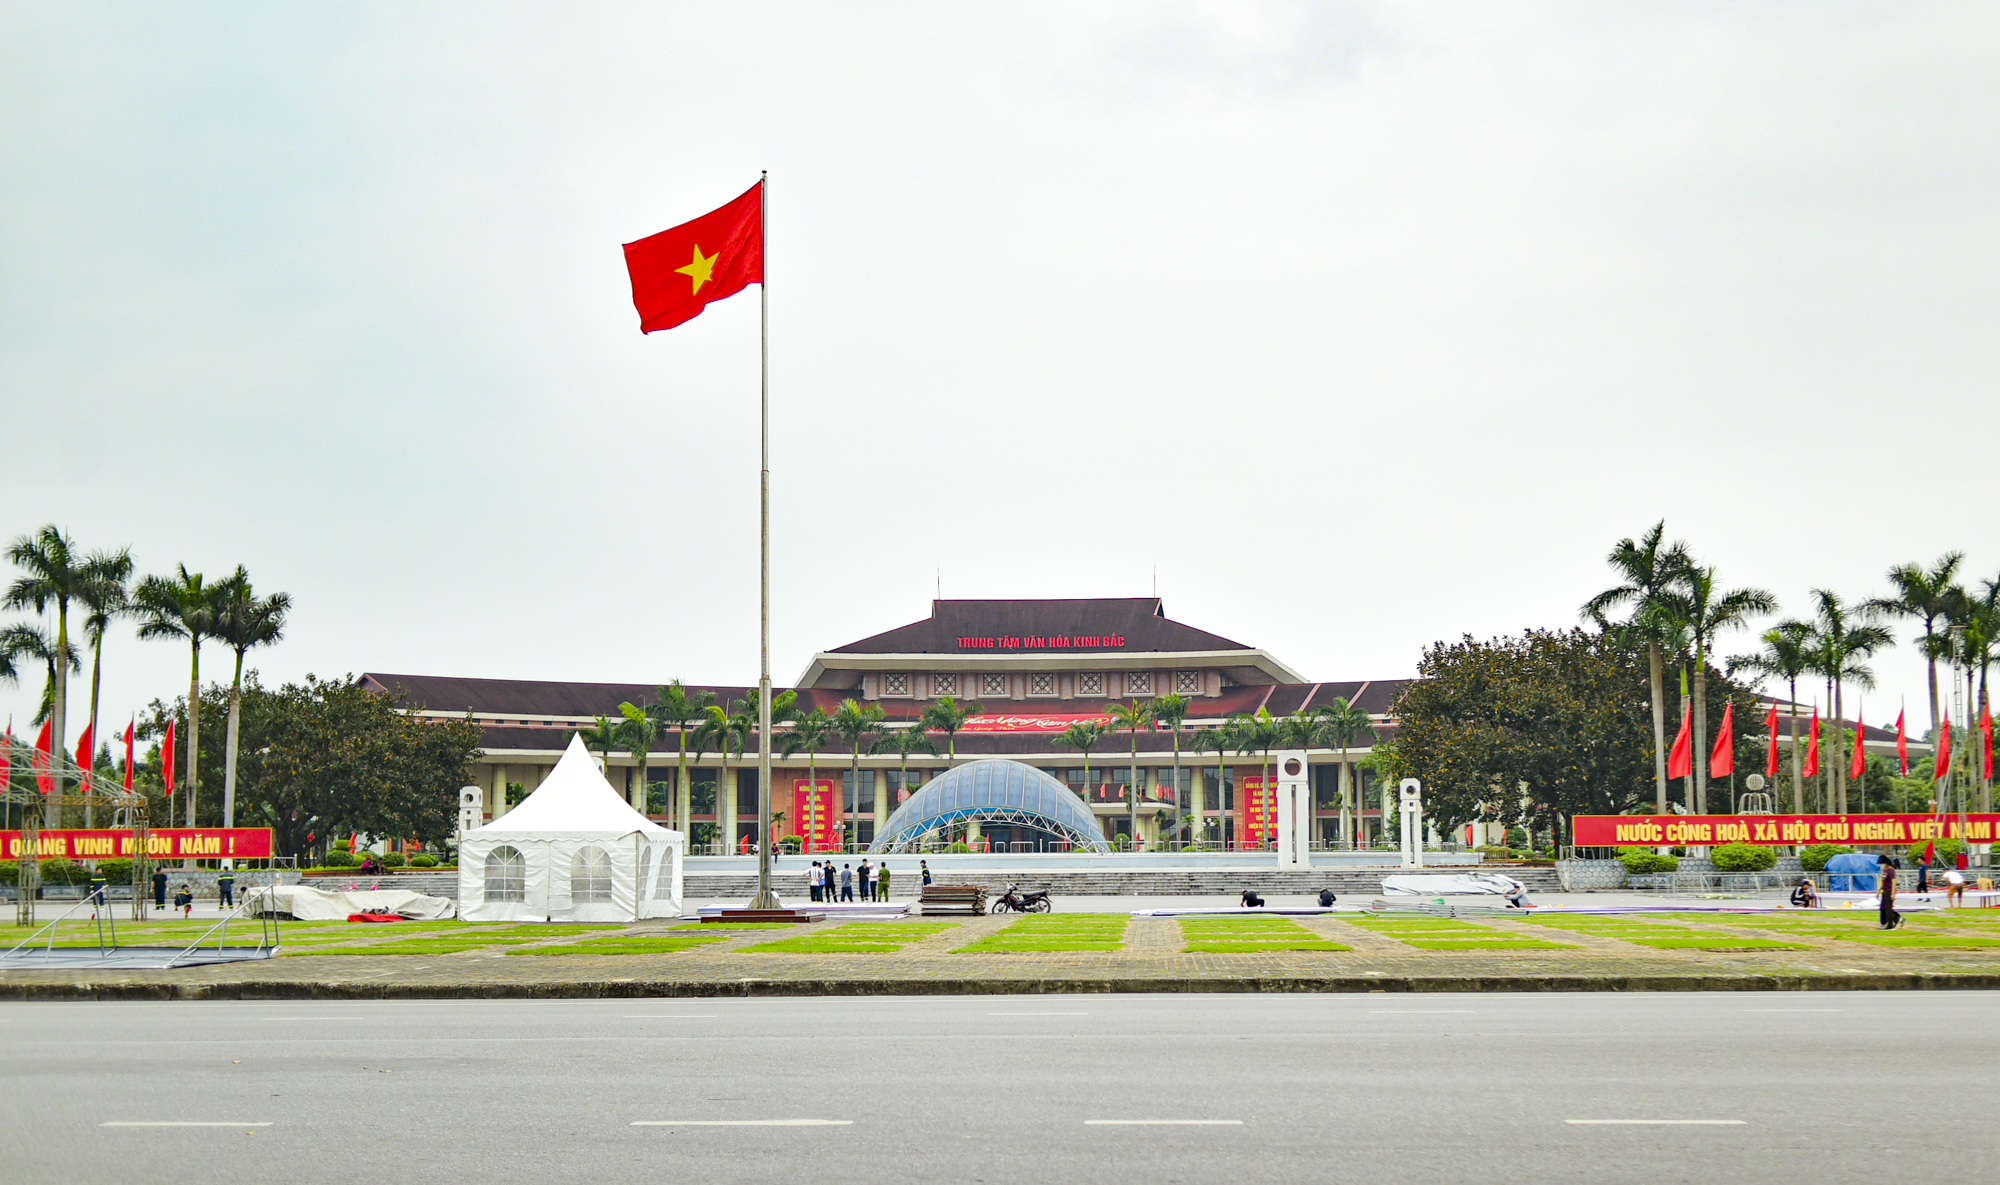 Khu vực trung tâm của trung tâm tỉnh sắp lên thành phố: Có khu hành chính độc đáo bậc nhất Việt Nam; Vingroup, Vietcombank phô diễn vị thế- Ảnh 9.